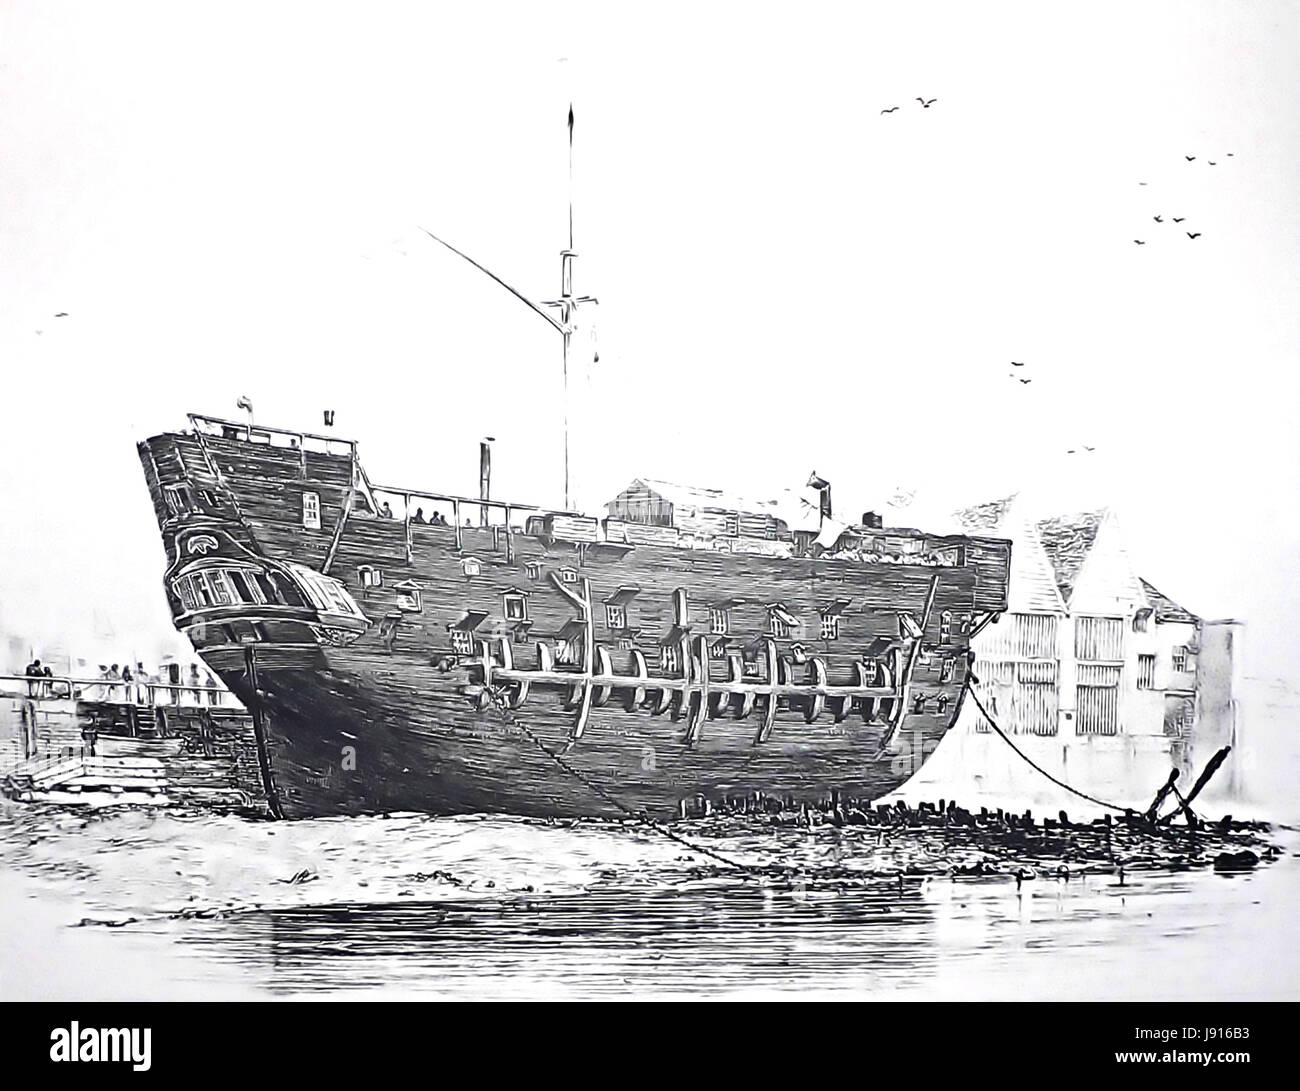 HULK de prison. HMS Discovery, un ancien sloop 10-gun, utilisé comme prison de bateau à Deptford, Kent, vers 1825 Banque D'Images